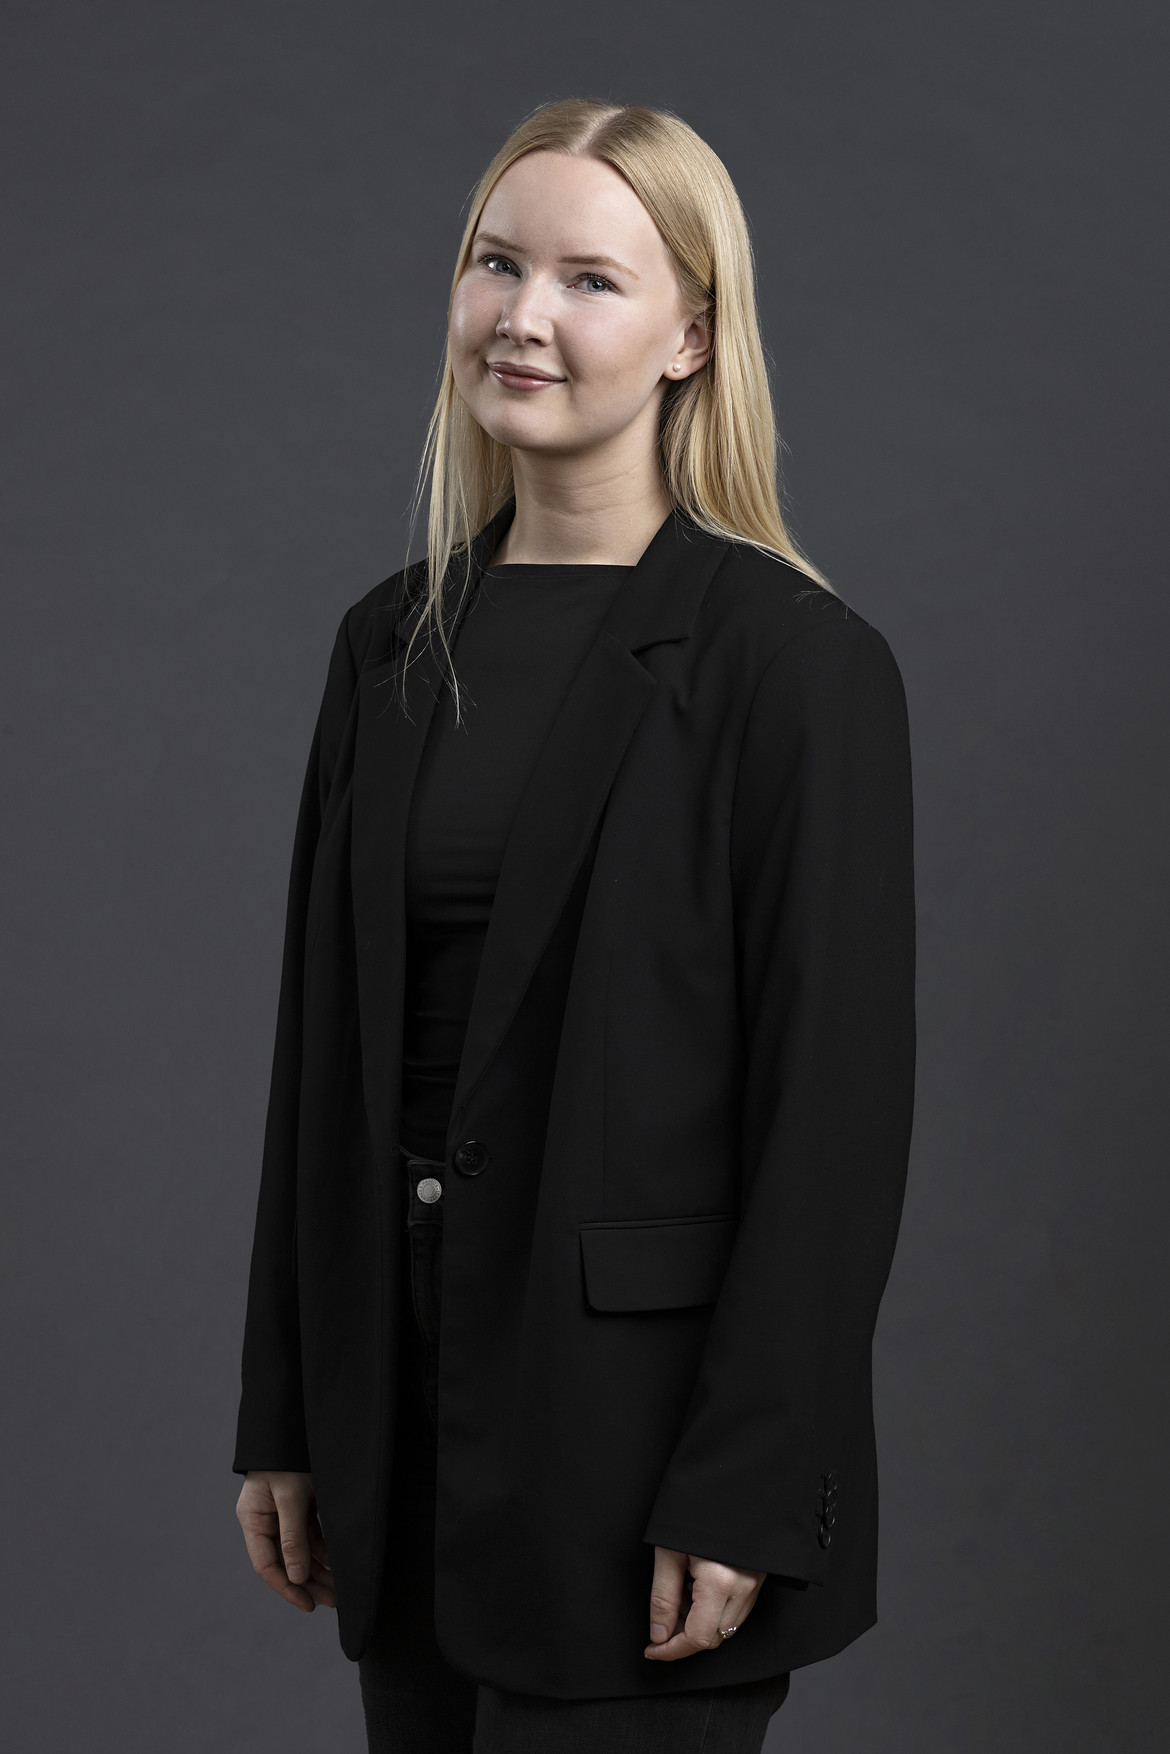 Anna Selden Vestergaard